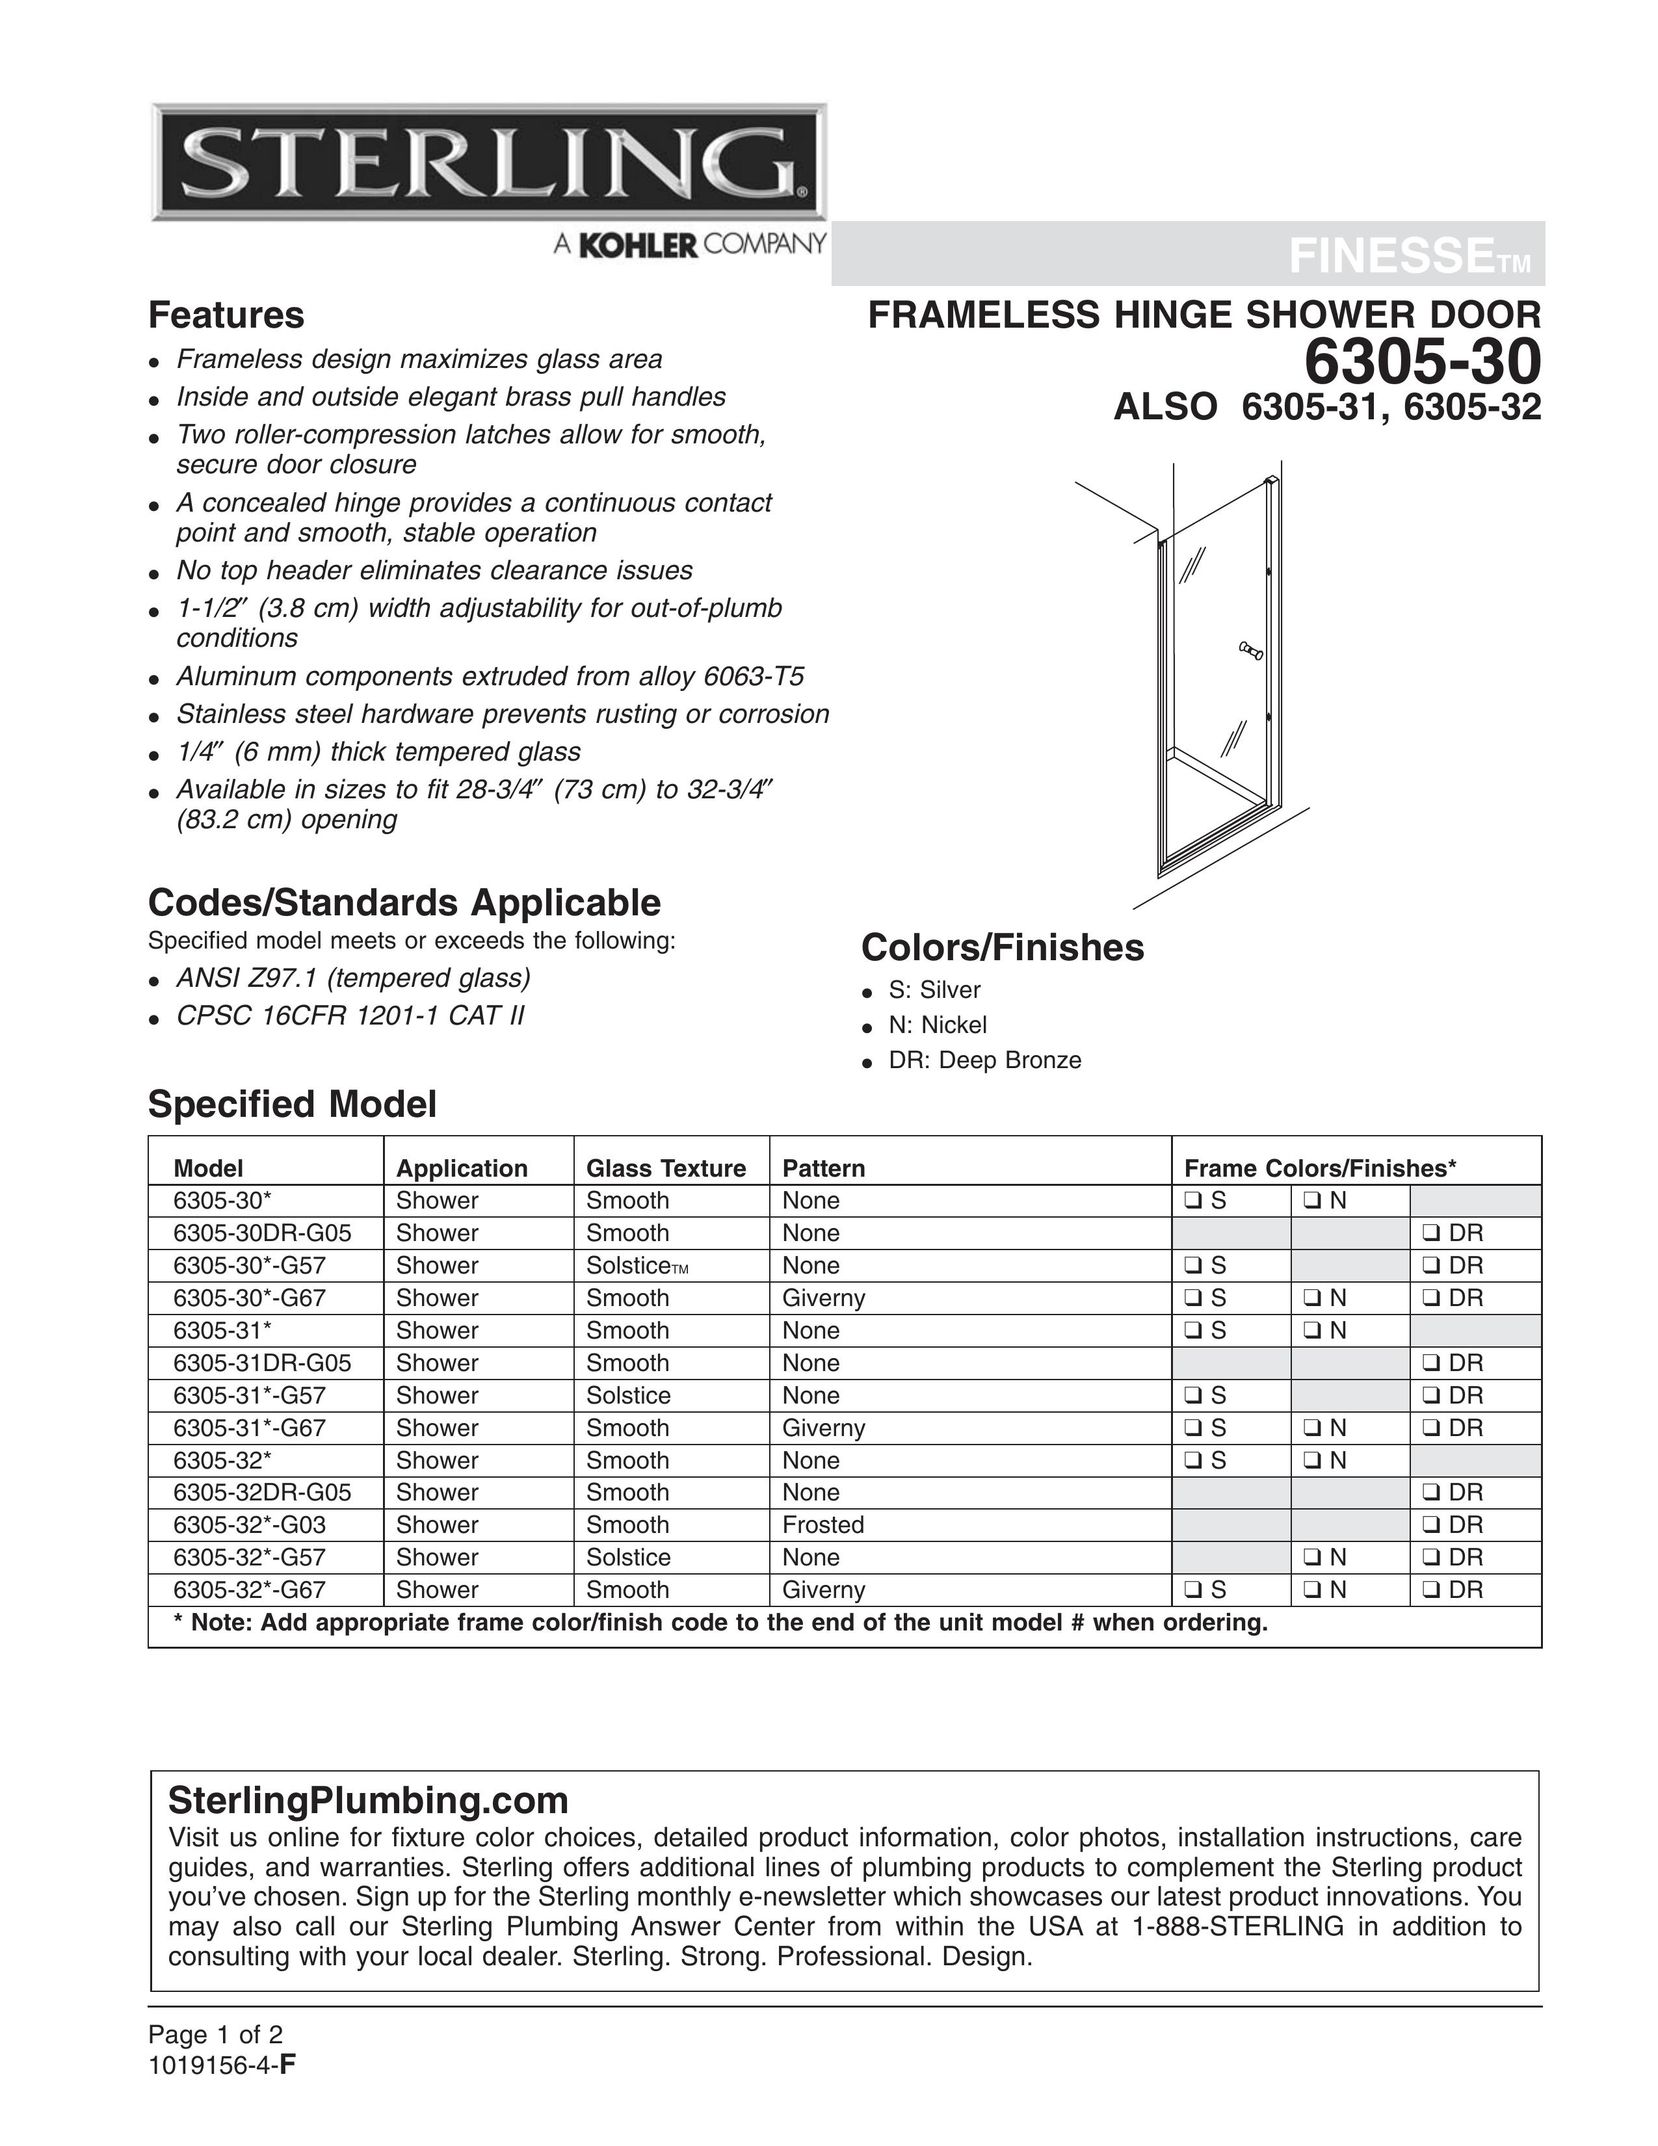 Sterling Plumbing 6305-30 Door User Manual